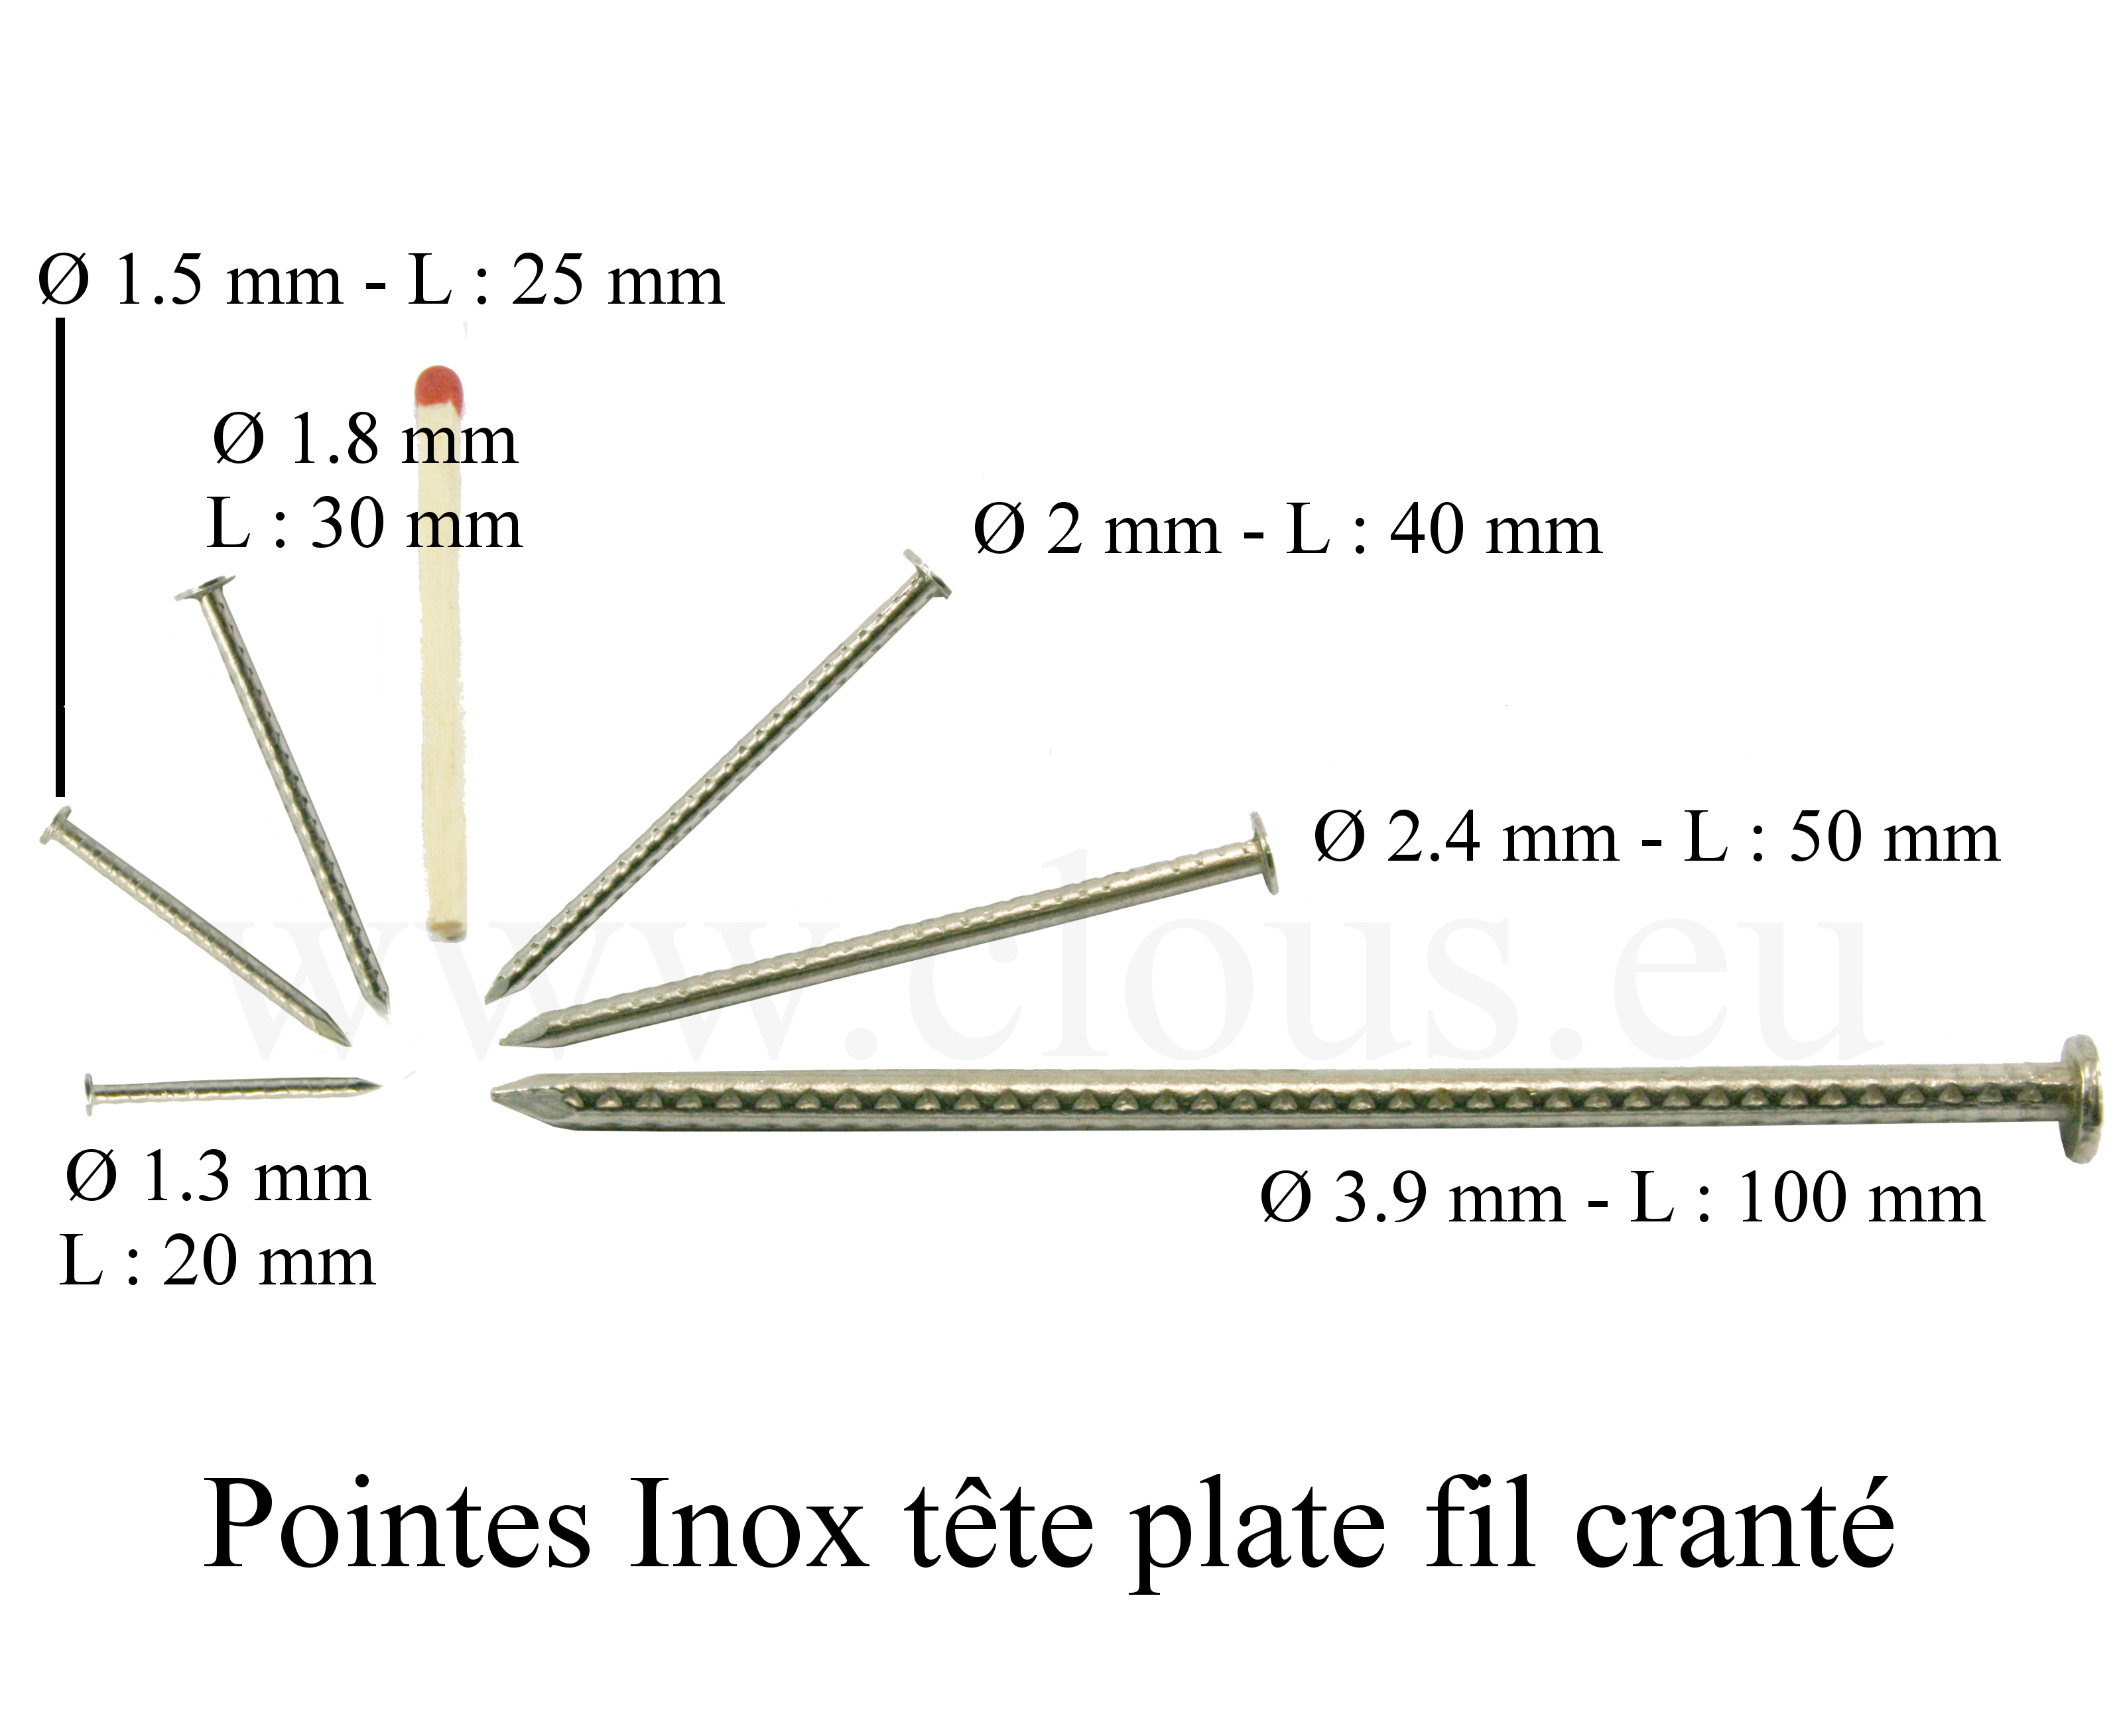 INSERT CRANTE TETE PLATE INOX